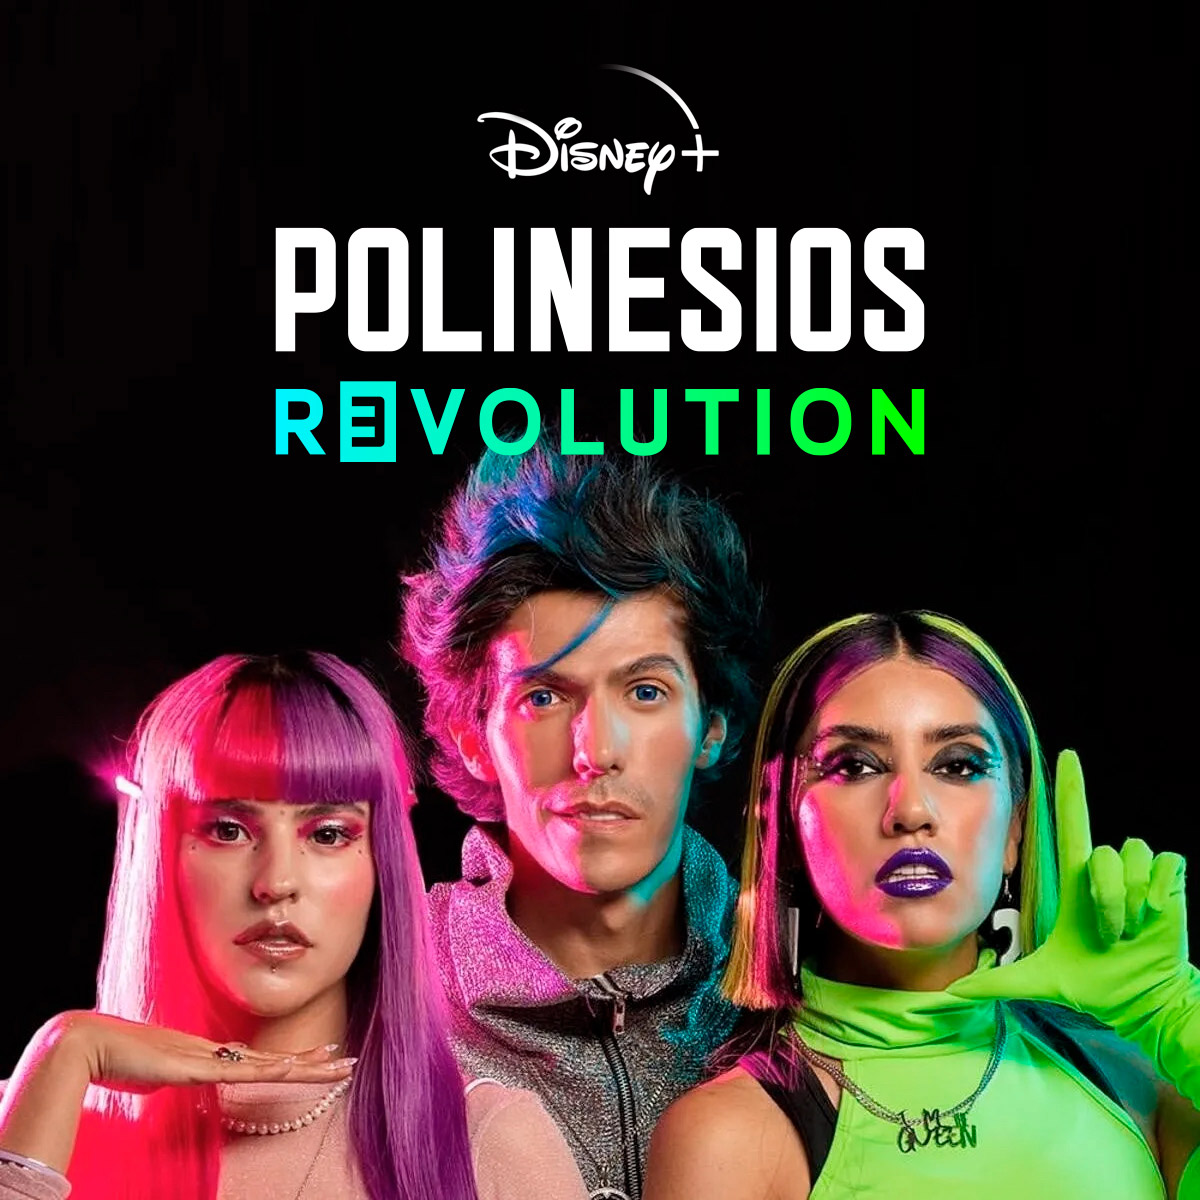 Diseño profesional de logo para la película de Los Polinesios en Disney+